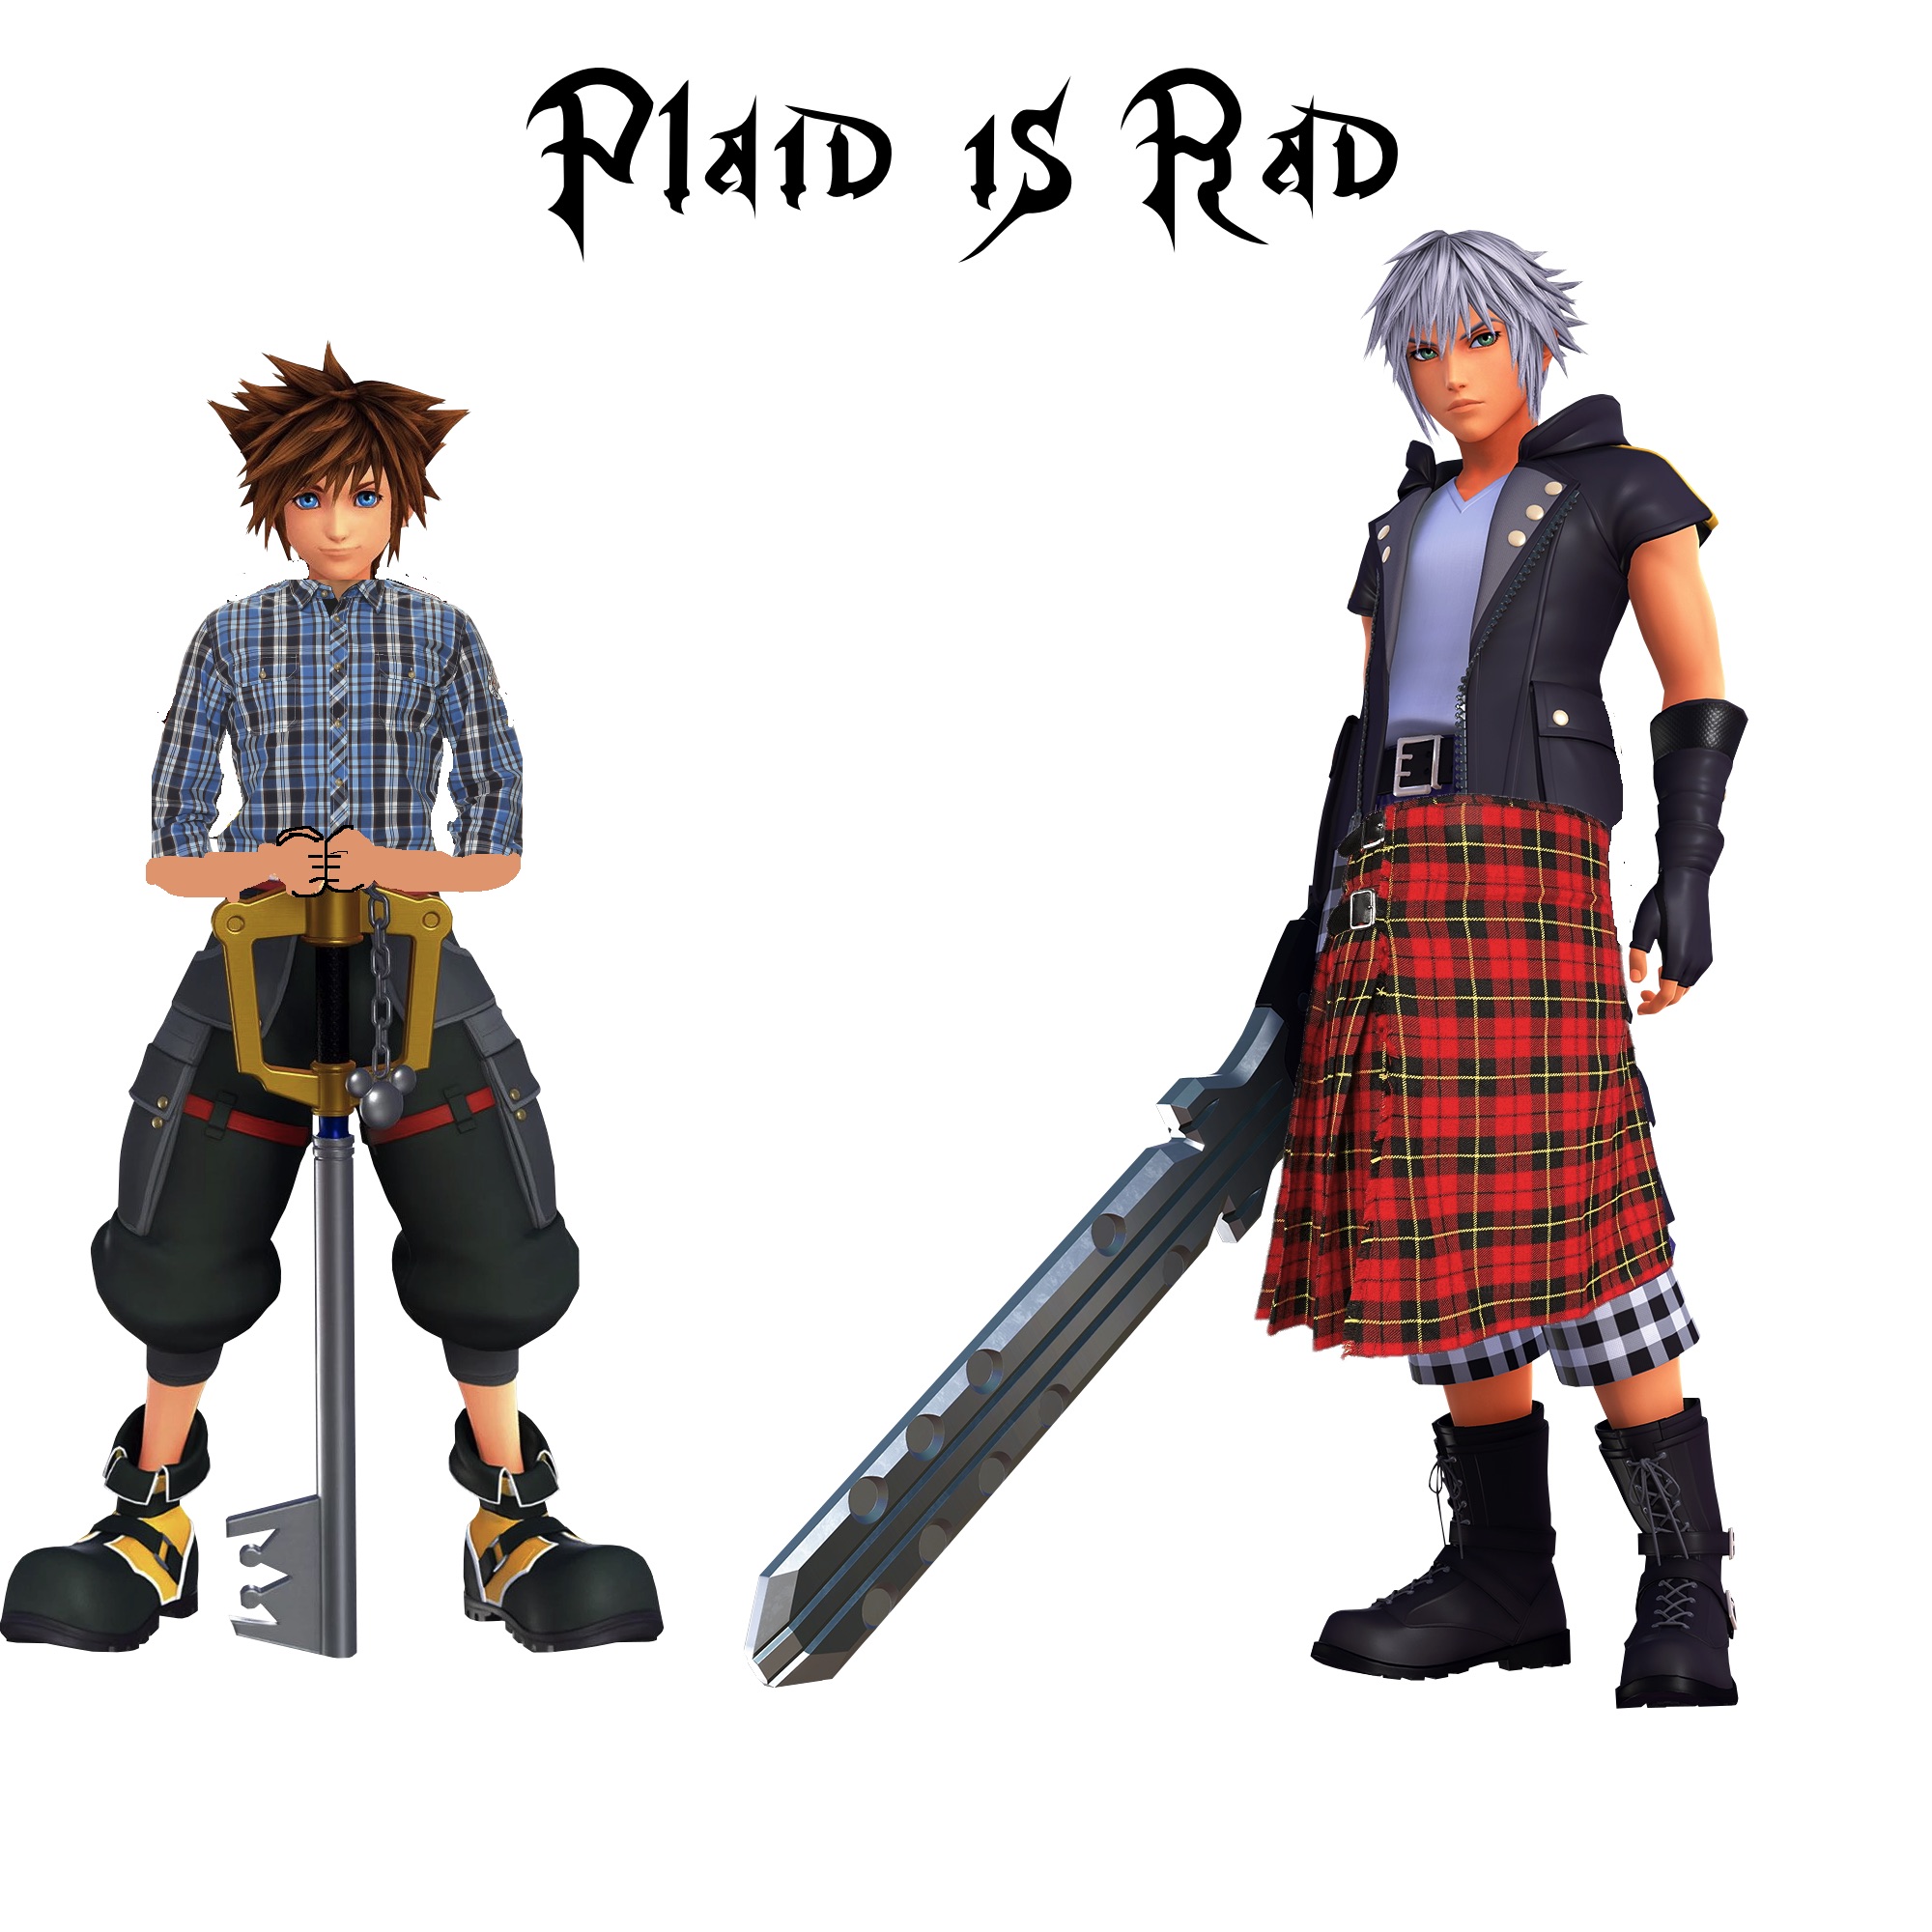 Plaid is Rad Kingdom Hearts 3